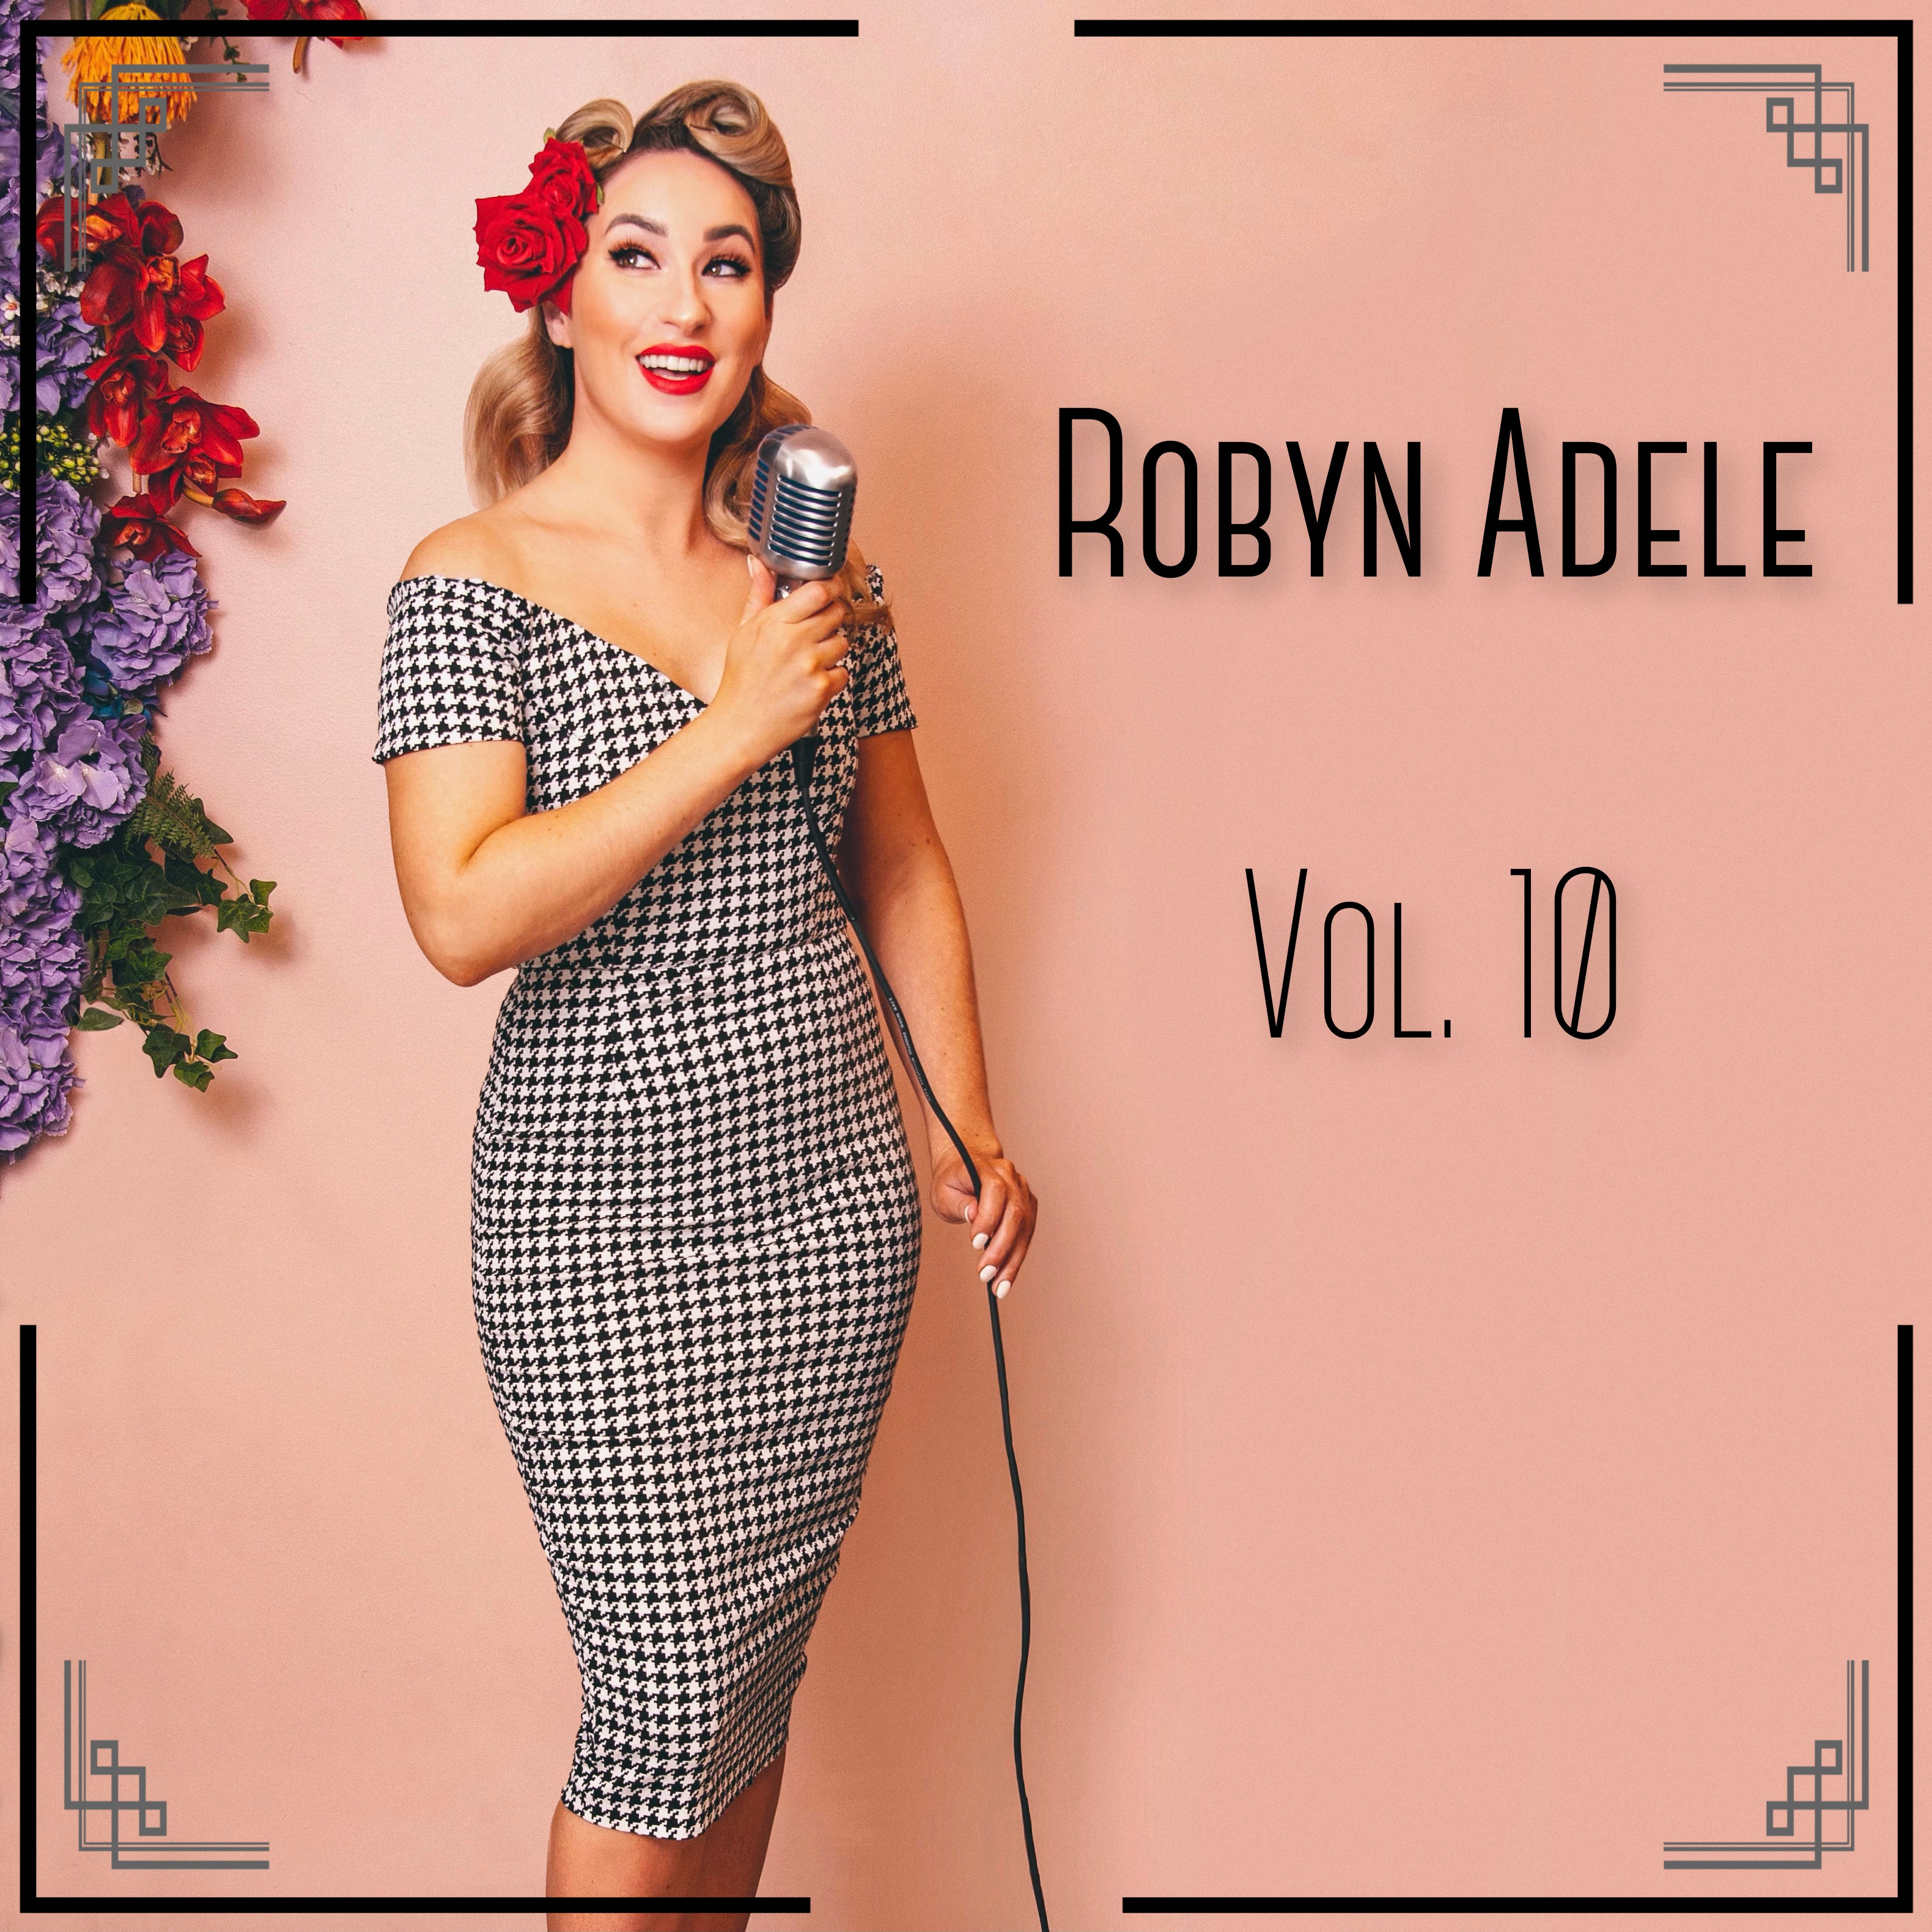 Robyn Adele Vol. 10 - CD